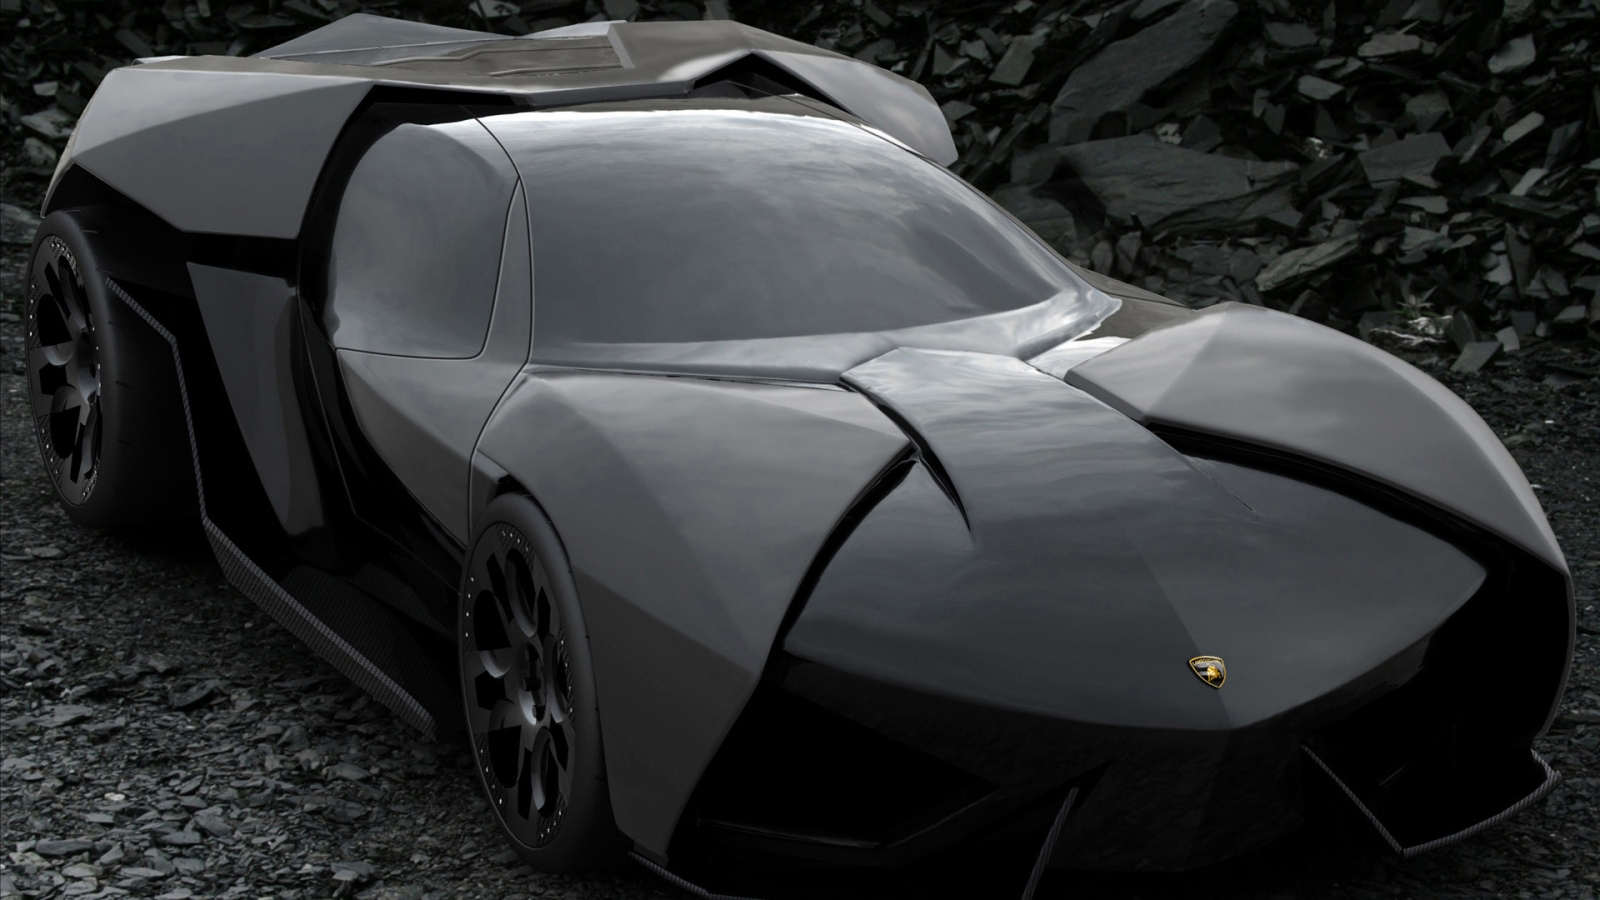 Lamborghini Ankonian Concept for 1600 x 900 HDTV resolution